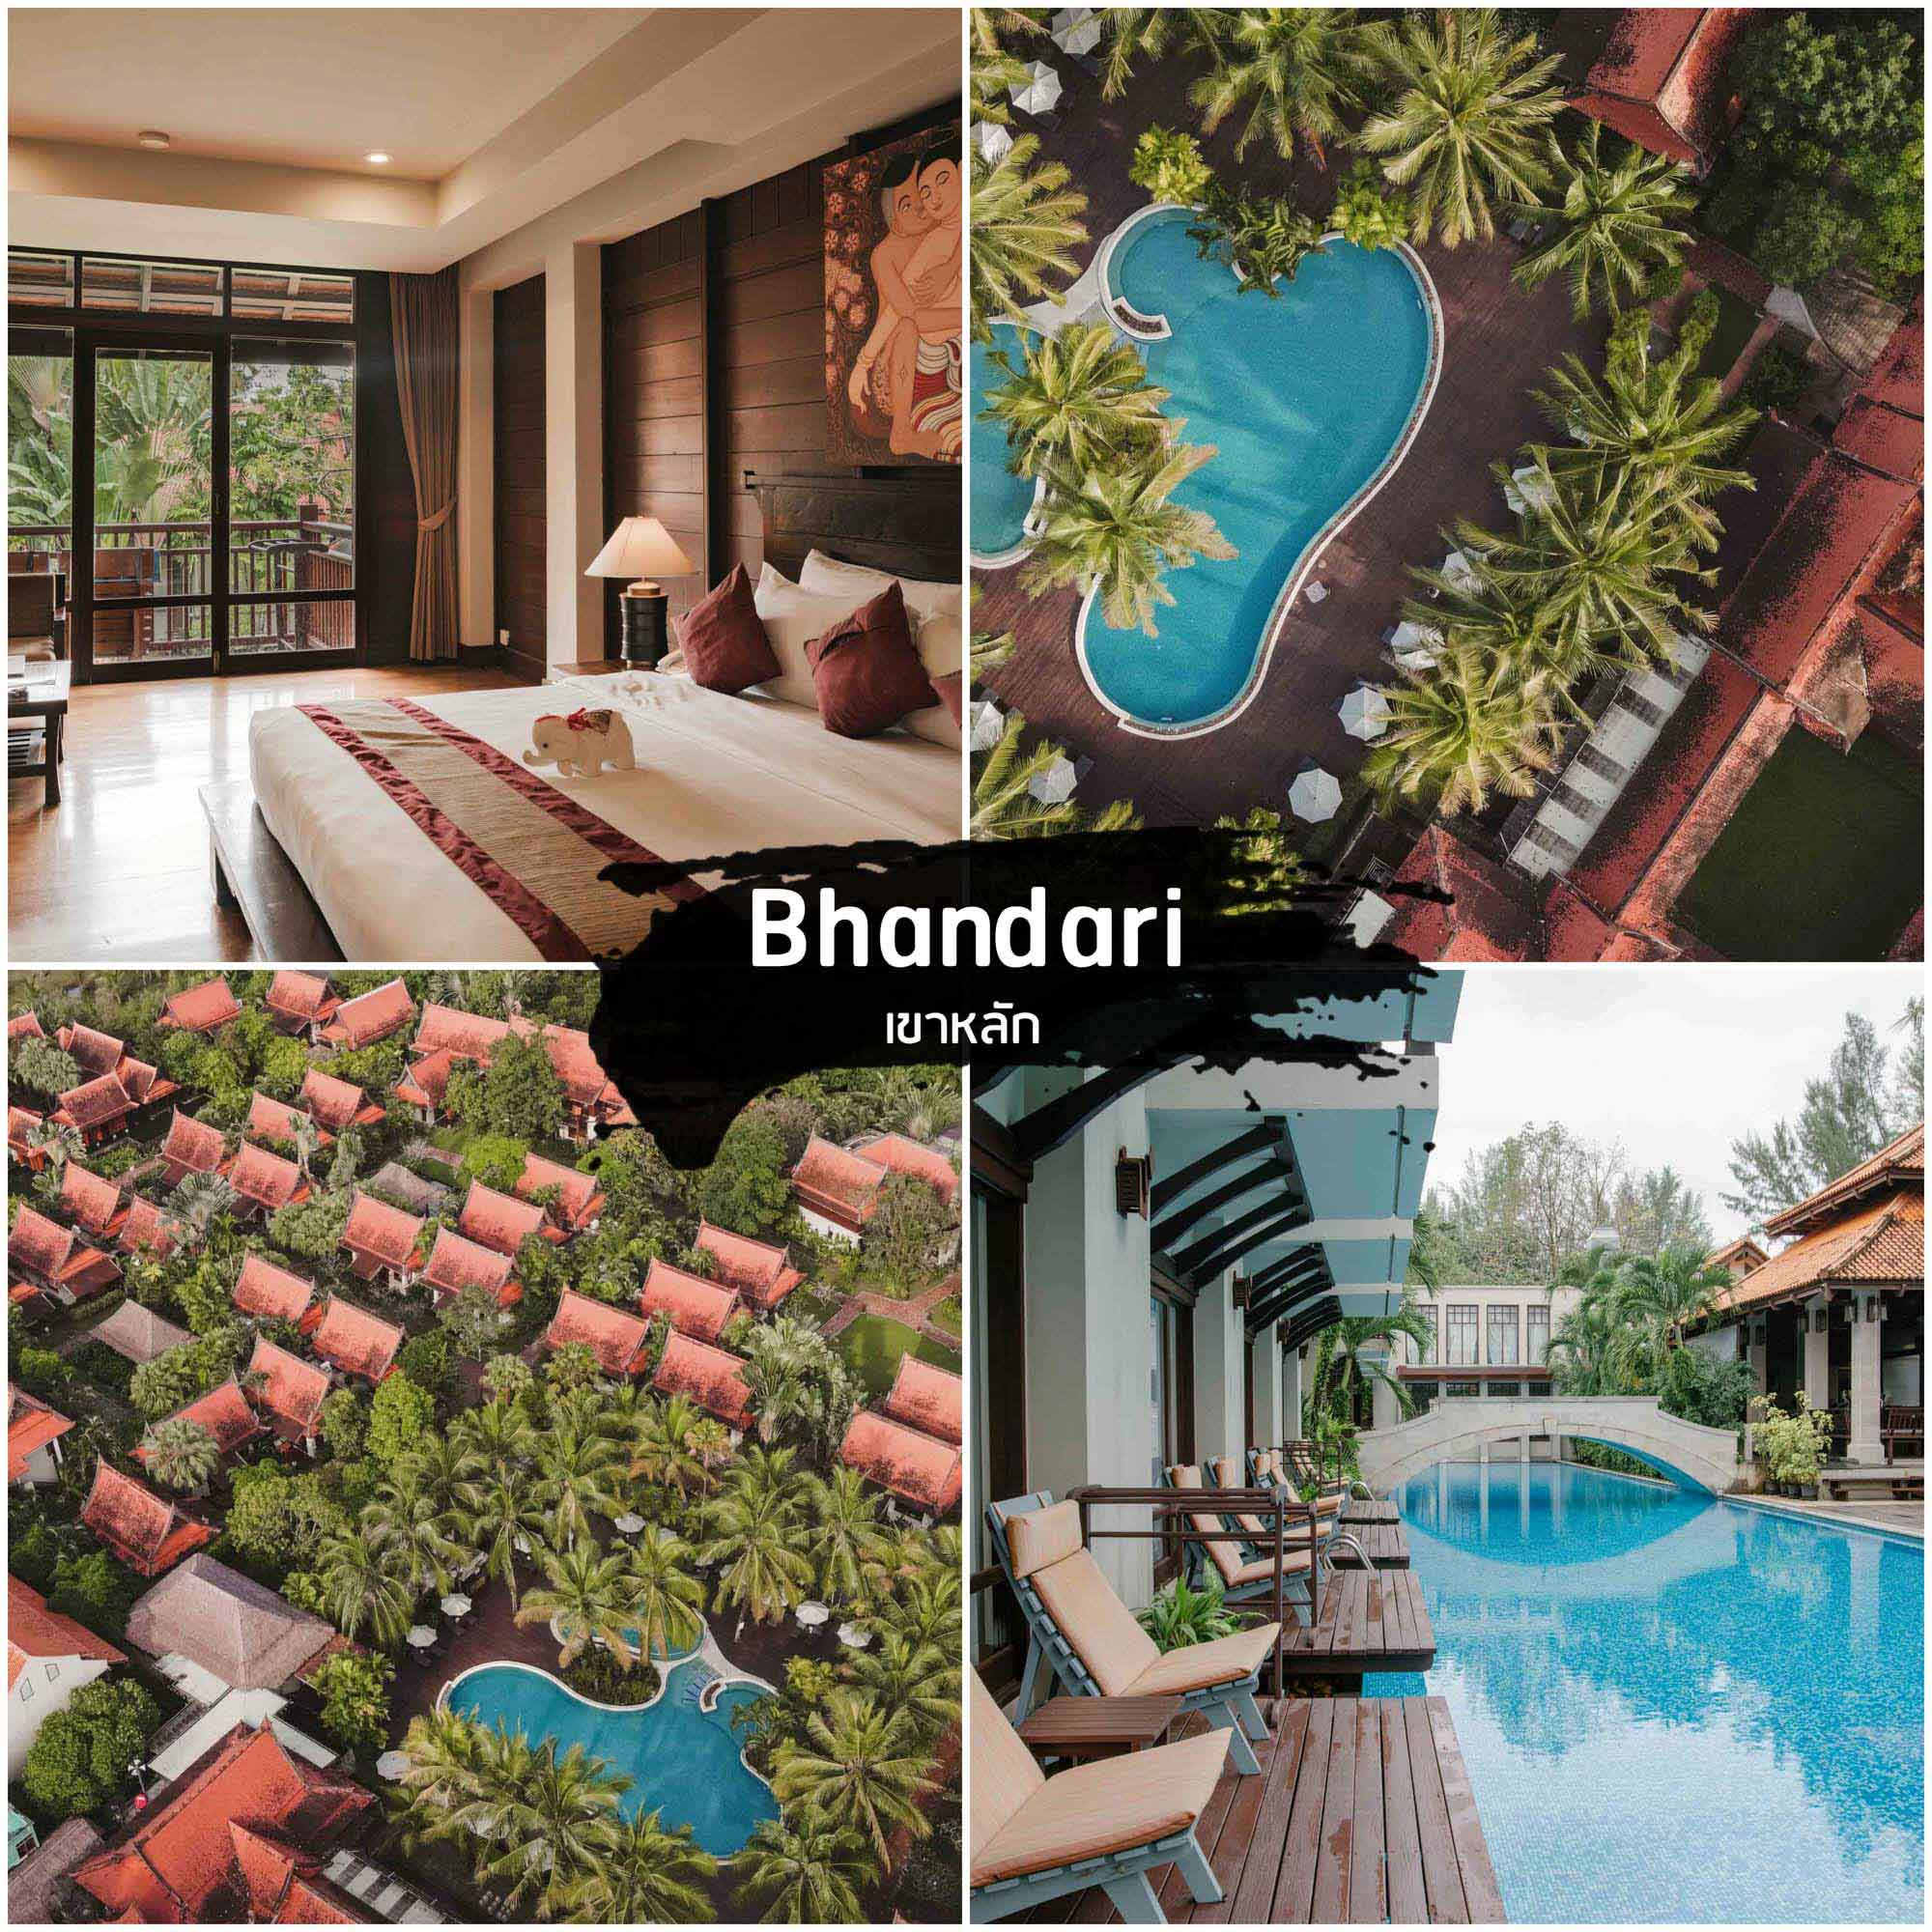 Khaolak Bhandari ที่พักเขาหลัก สุดสวยแต่งทรงไทย ใกล้หาดนางทองทรายสีดำ สไตล์สุดสวยไม่เหมือนใคร พังงา